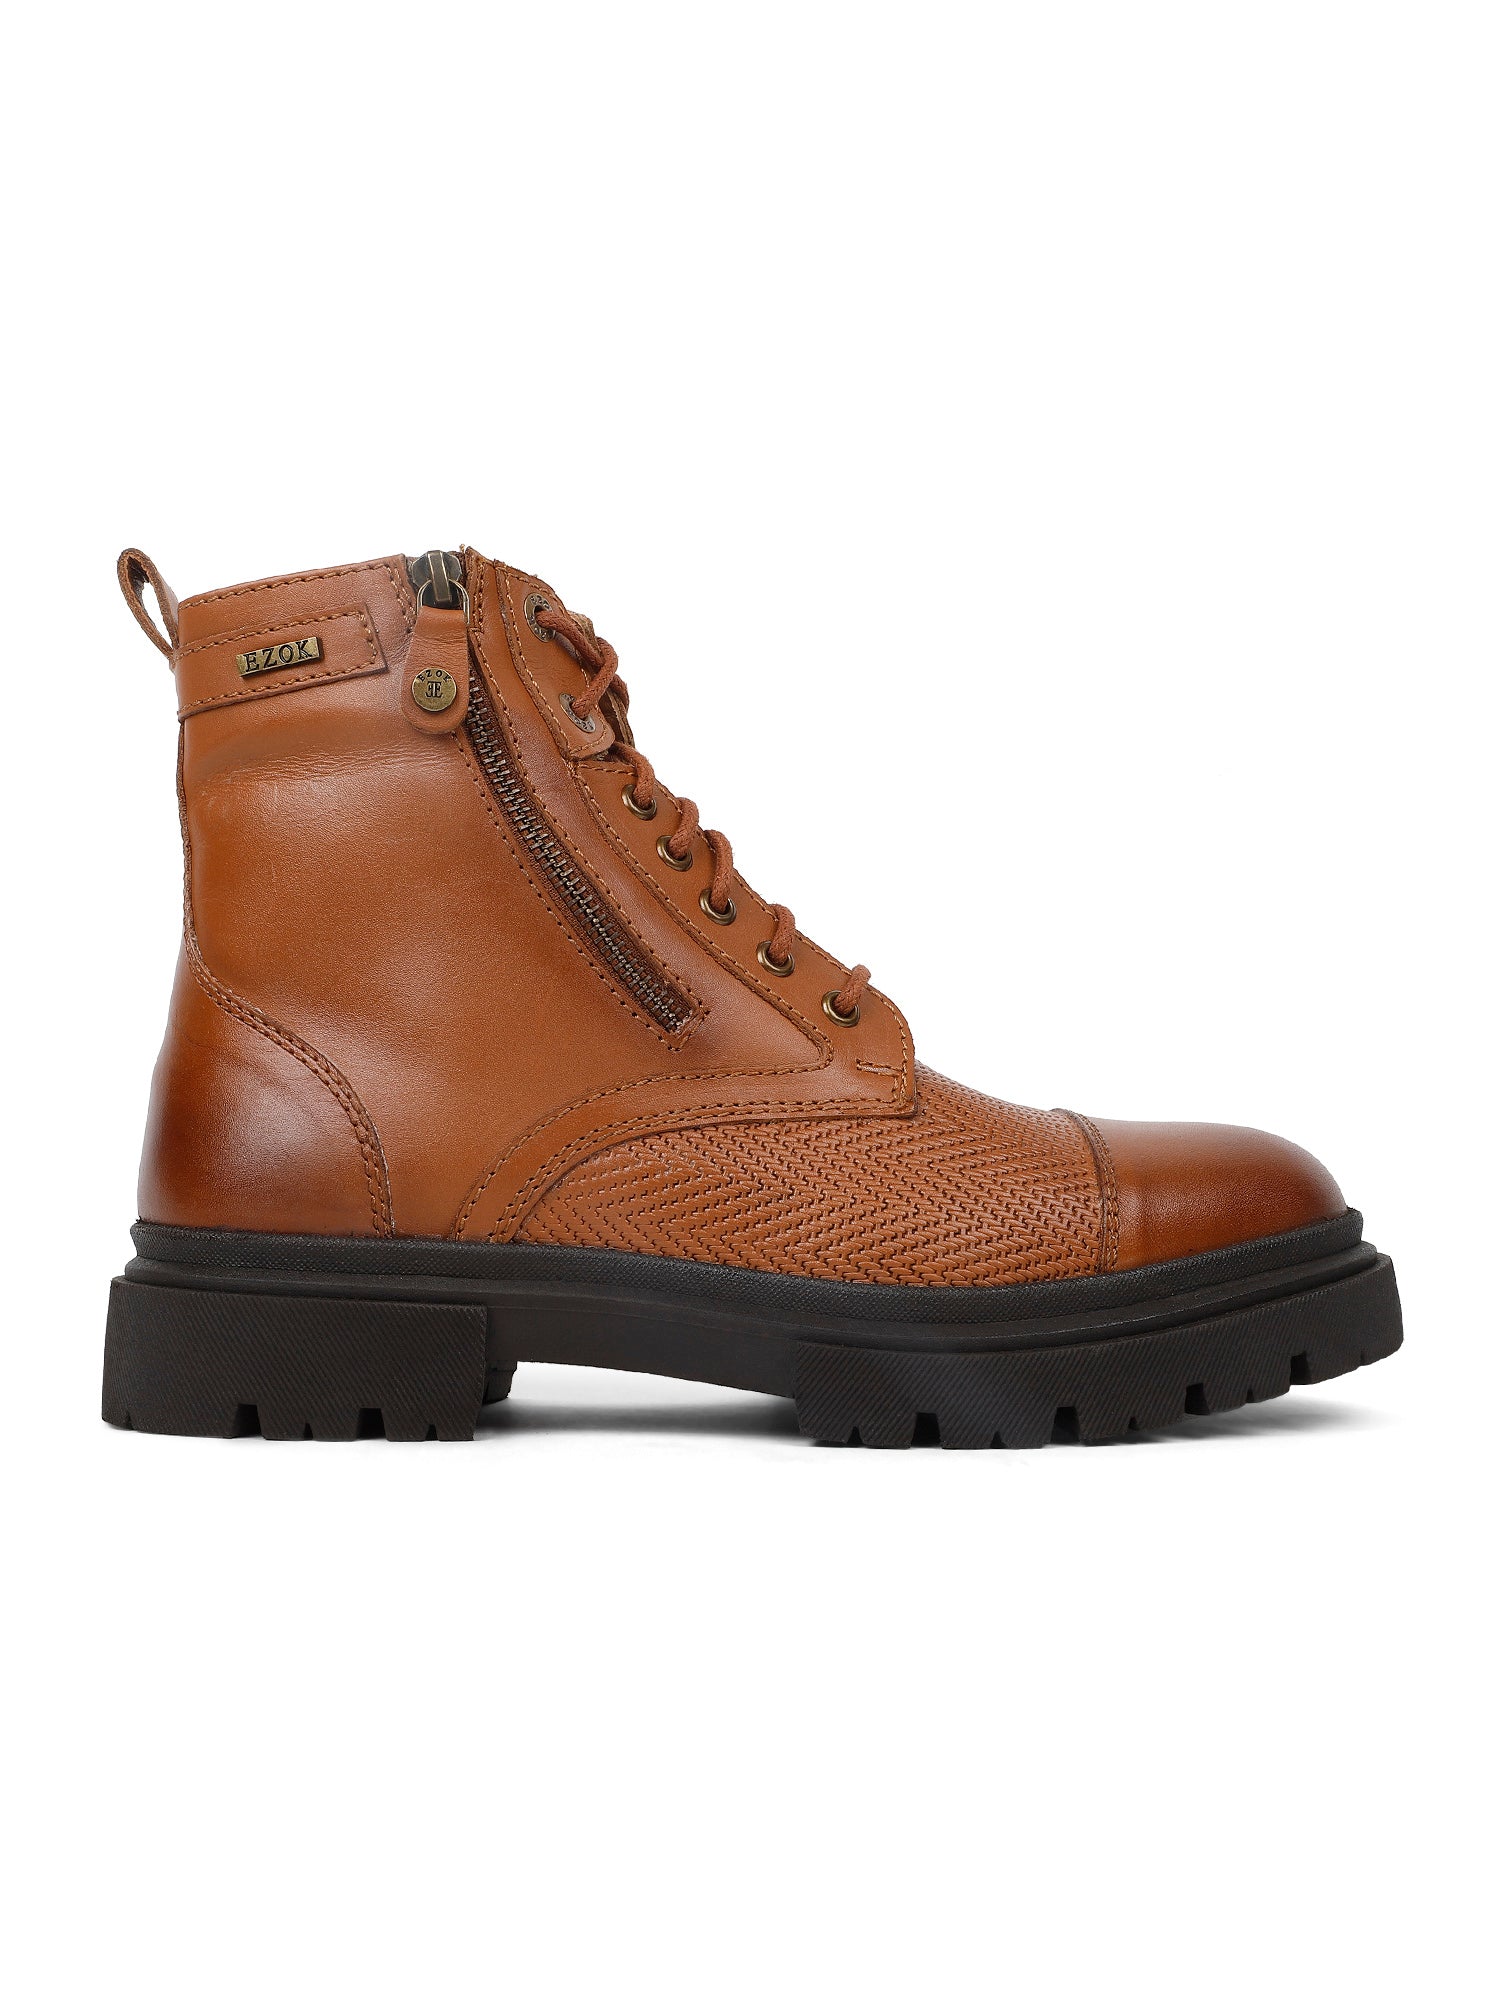 Ezok Tan Casual boot shoes for men (2501)